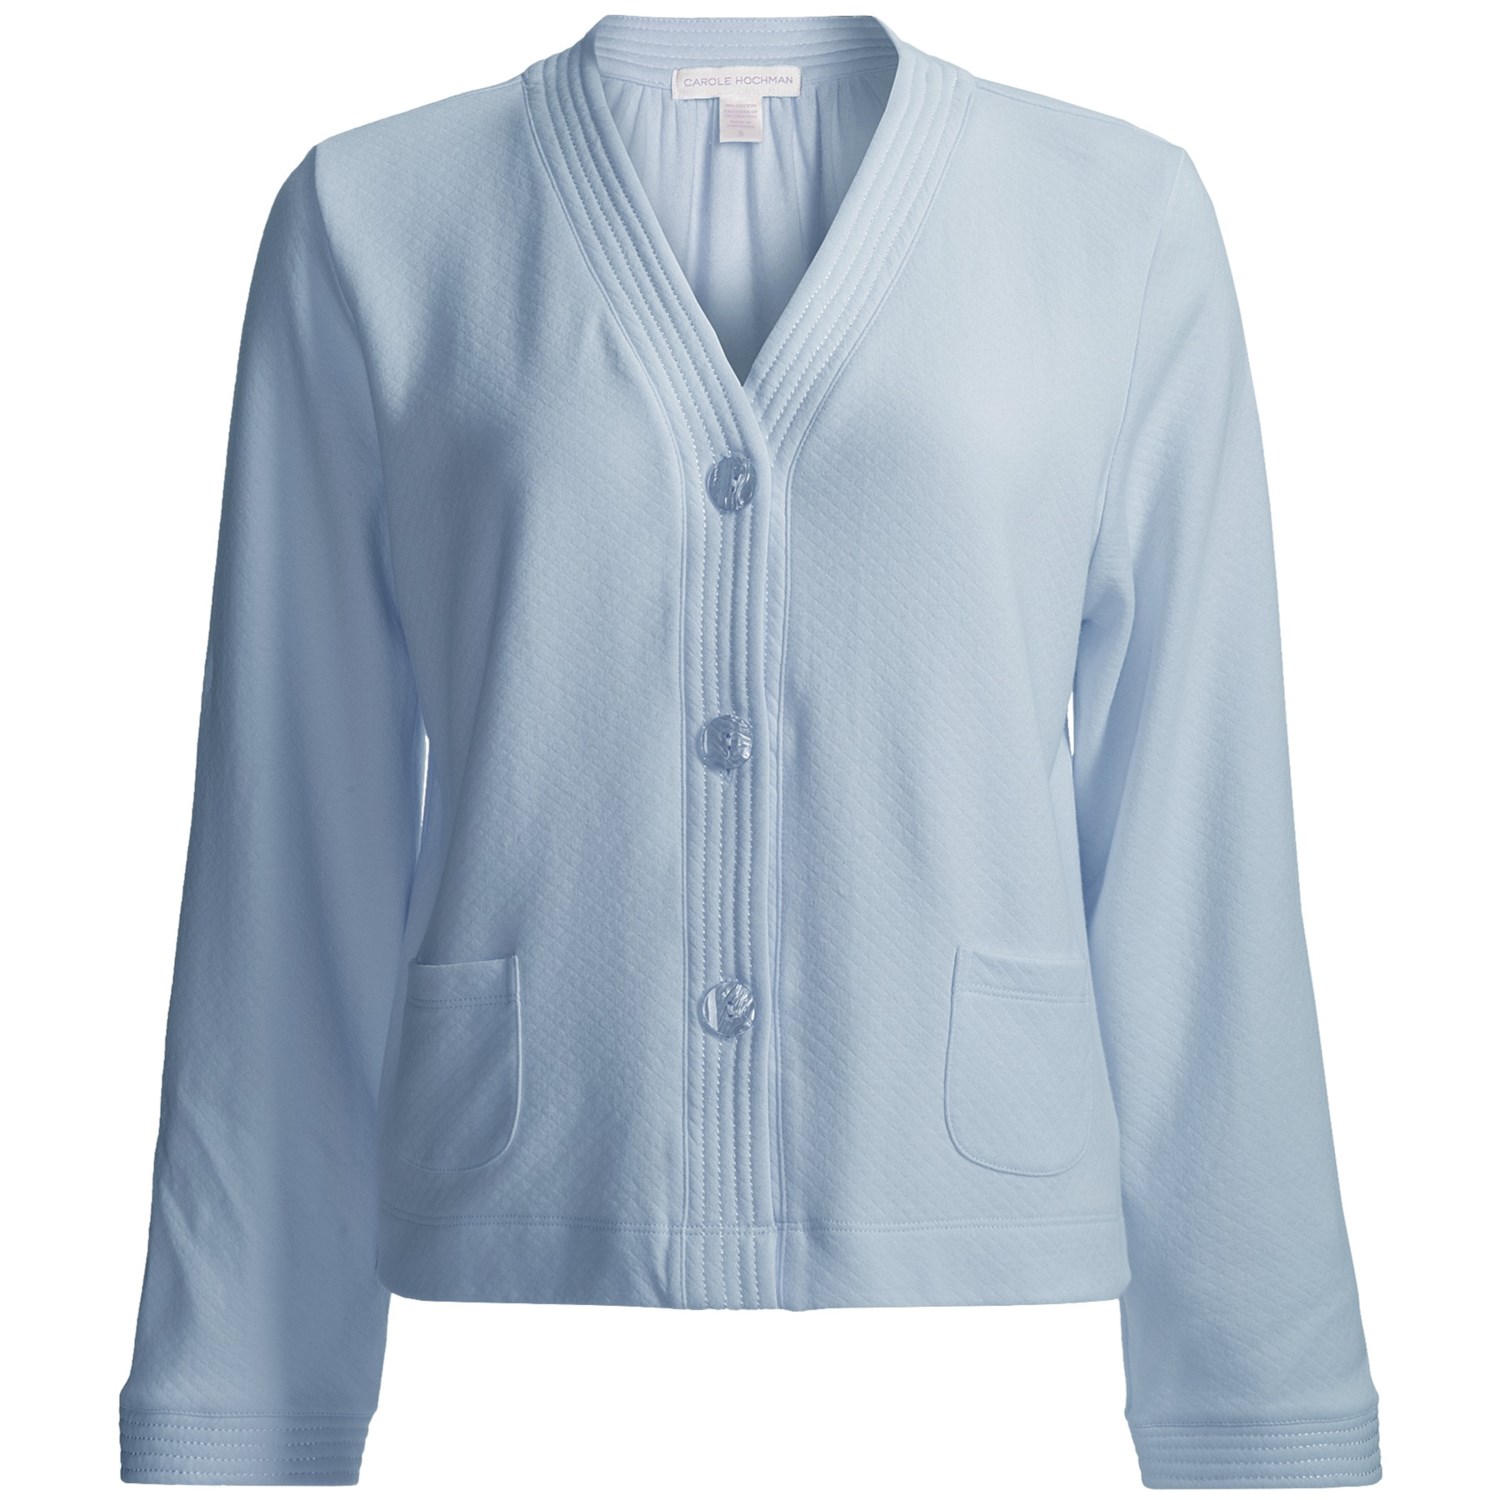 Carole Hochman Bed Jacket - Long Sleeve (For Women) in Blue Stream